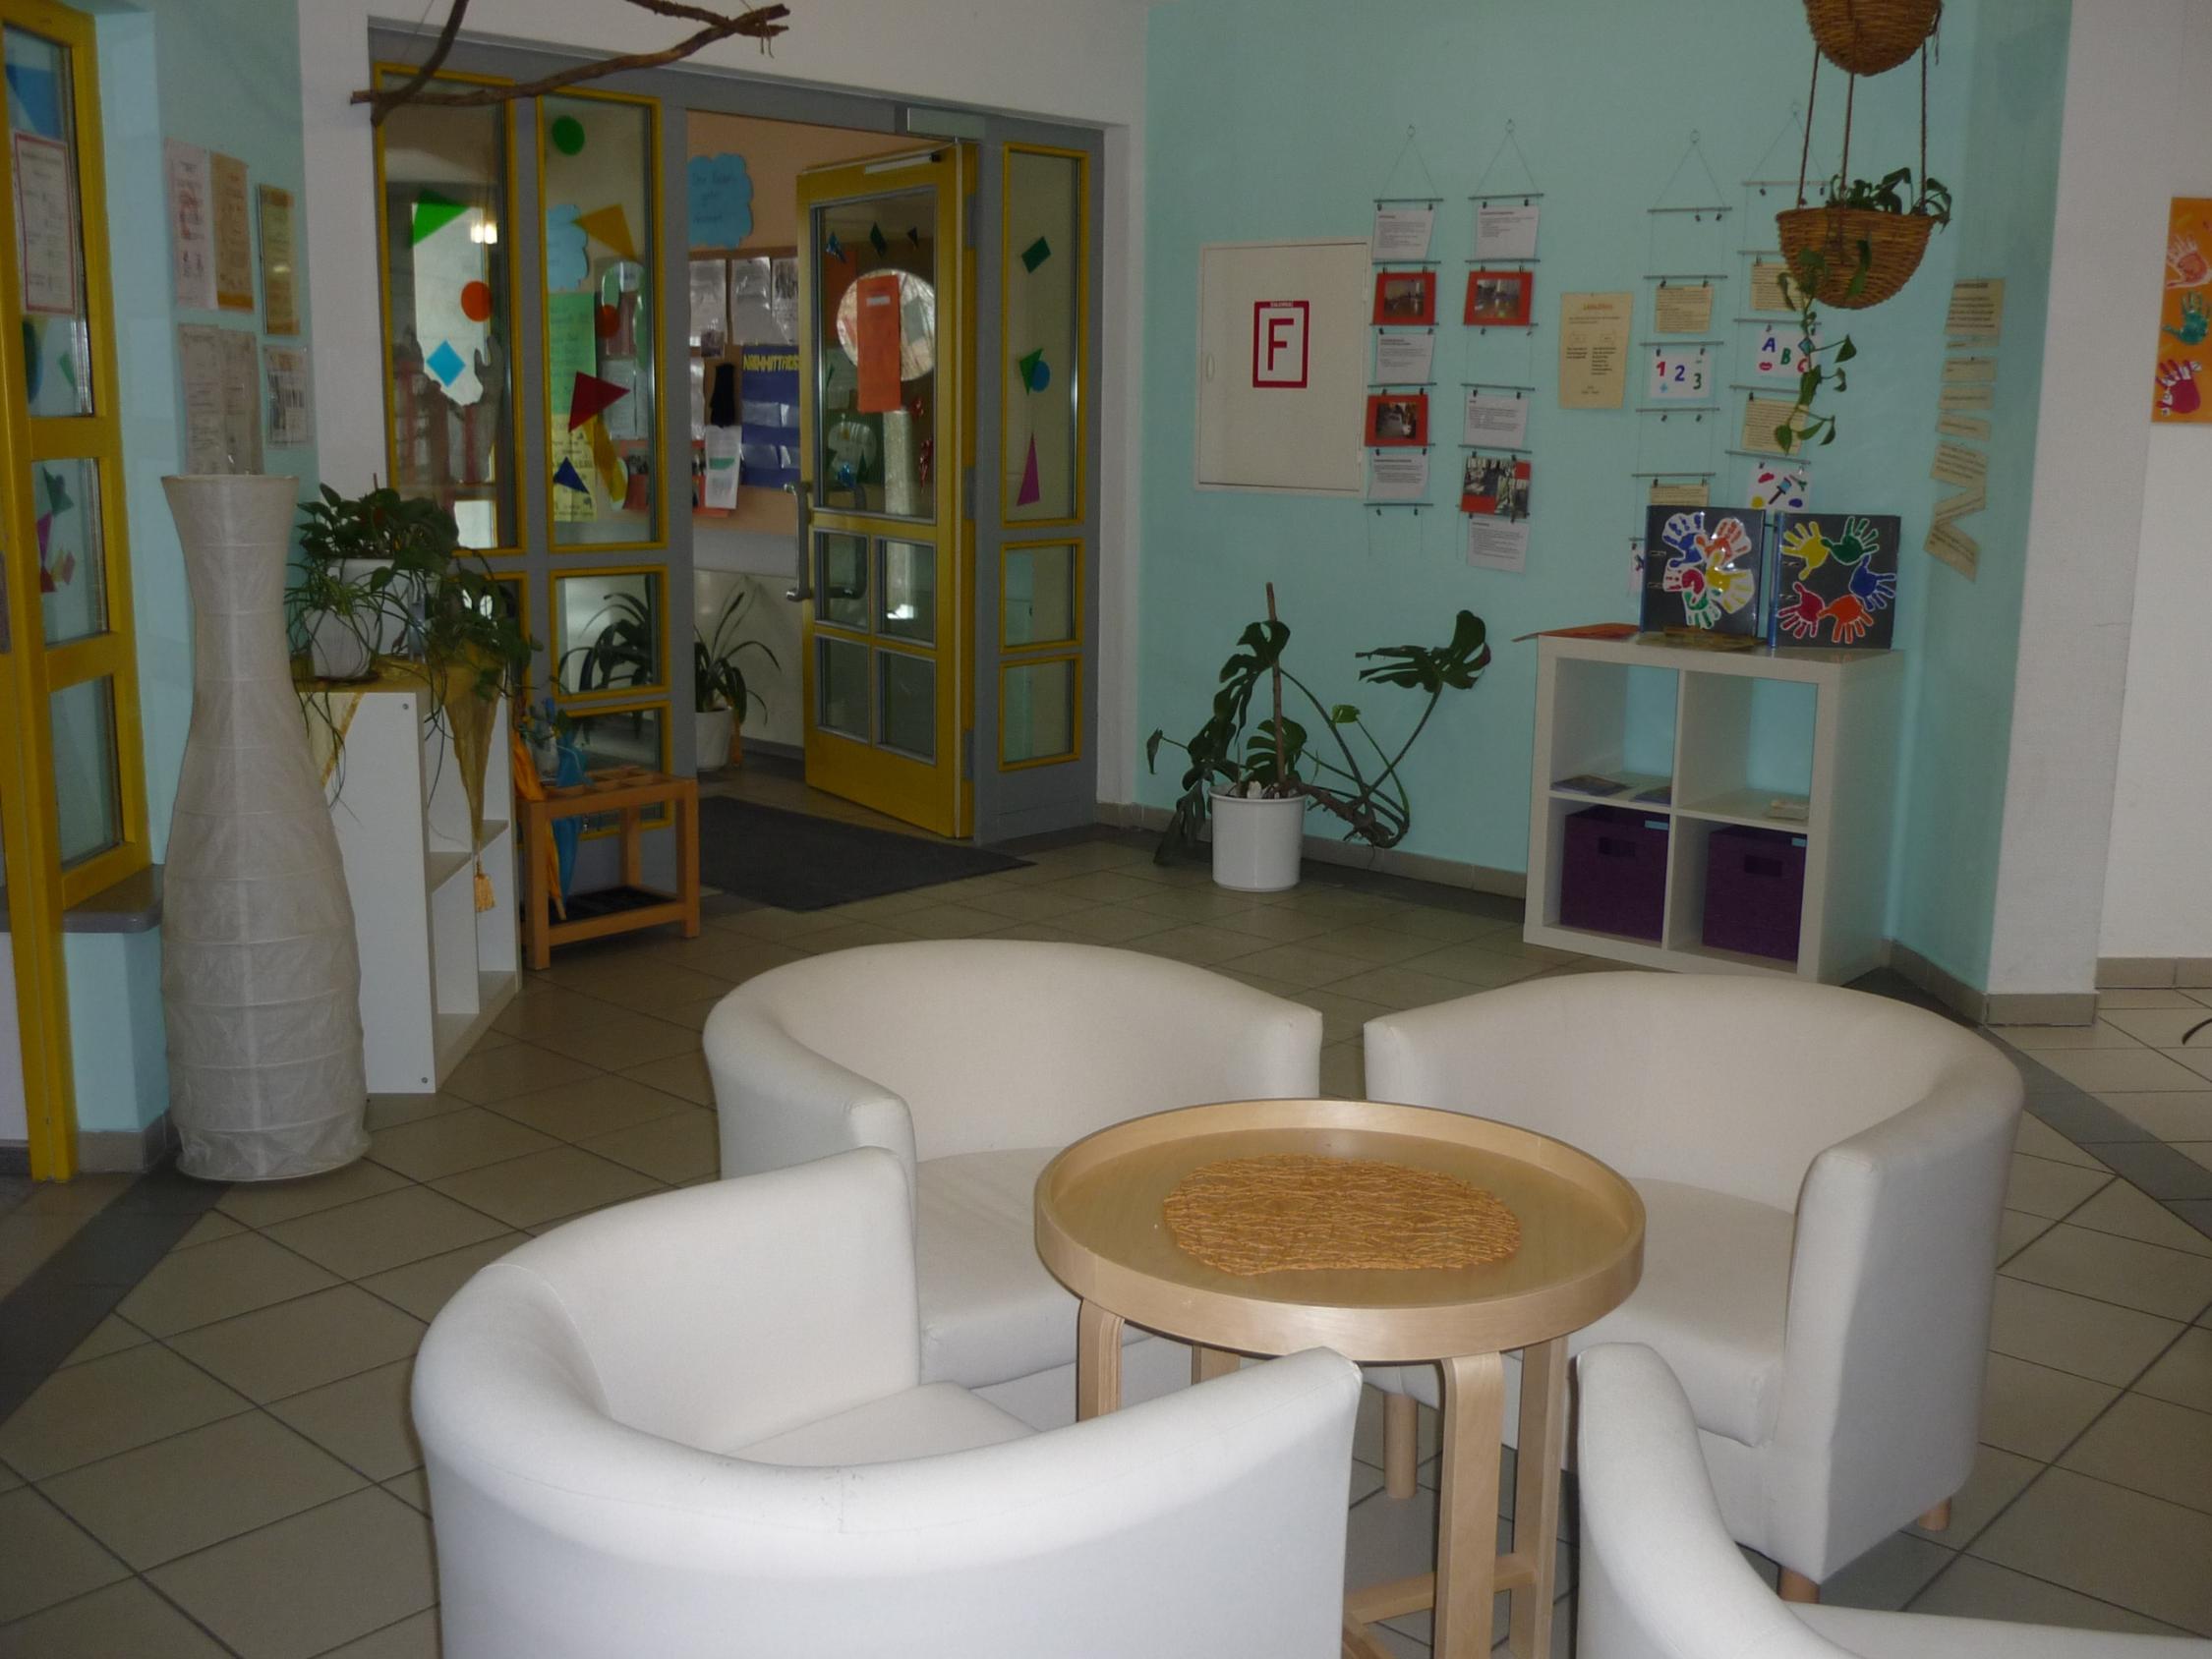 Eingangsbereich-Kindergarten